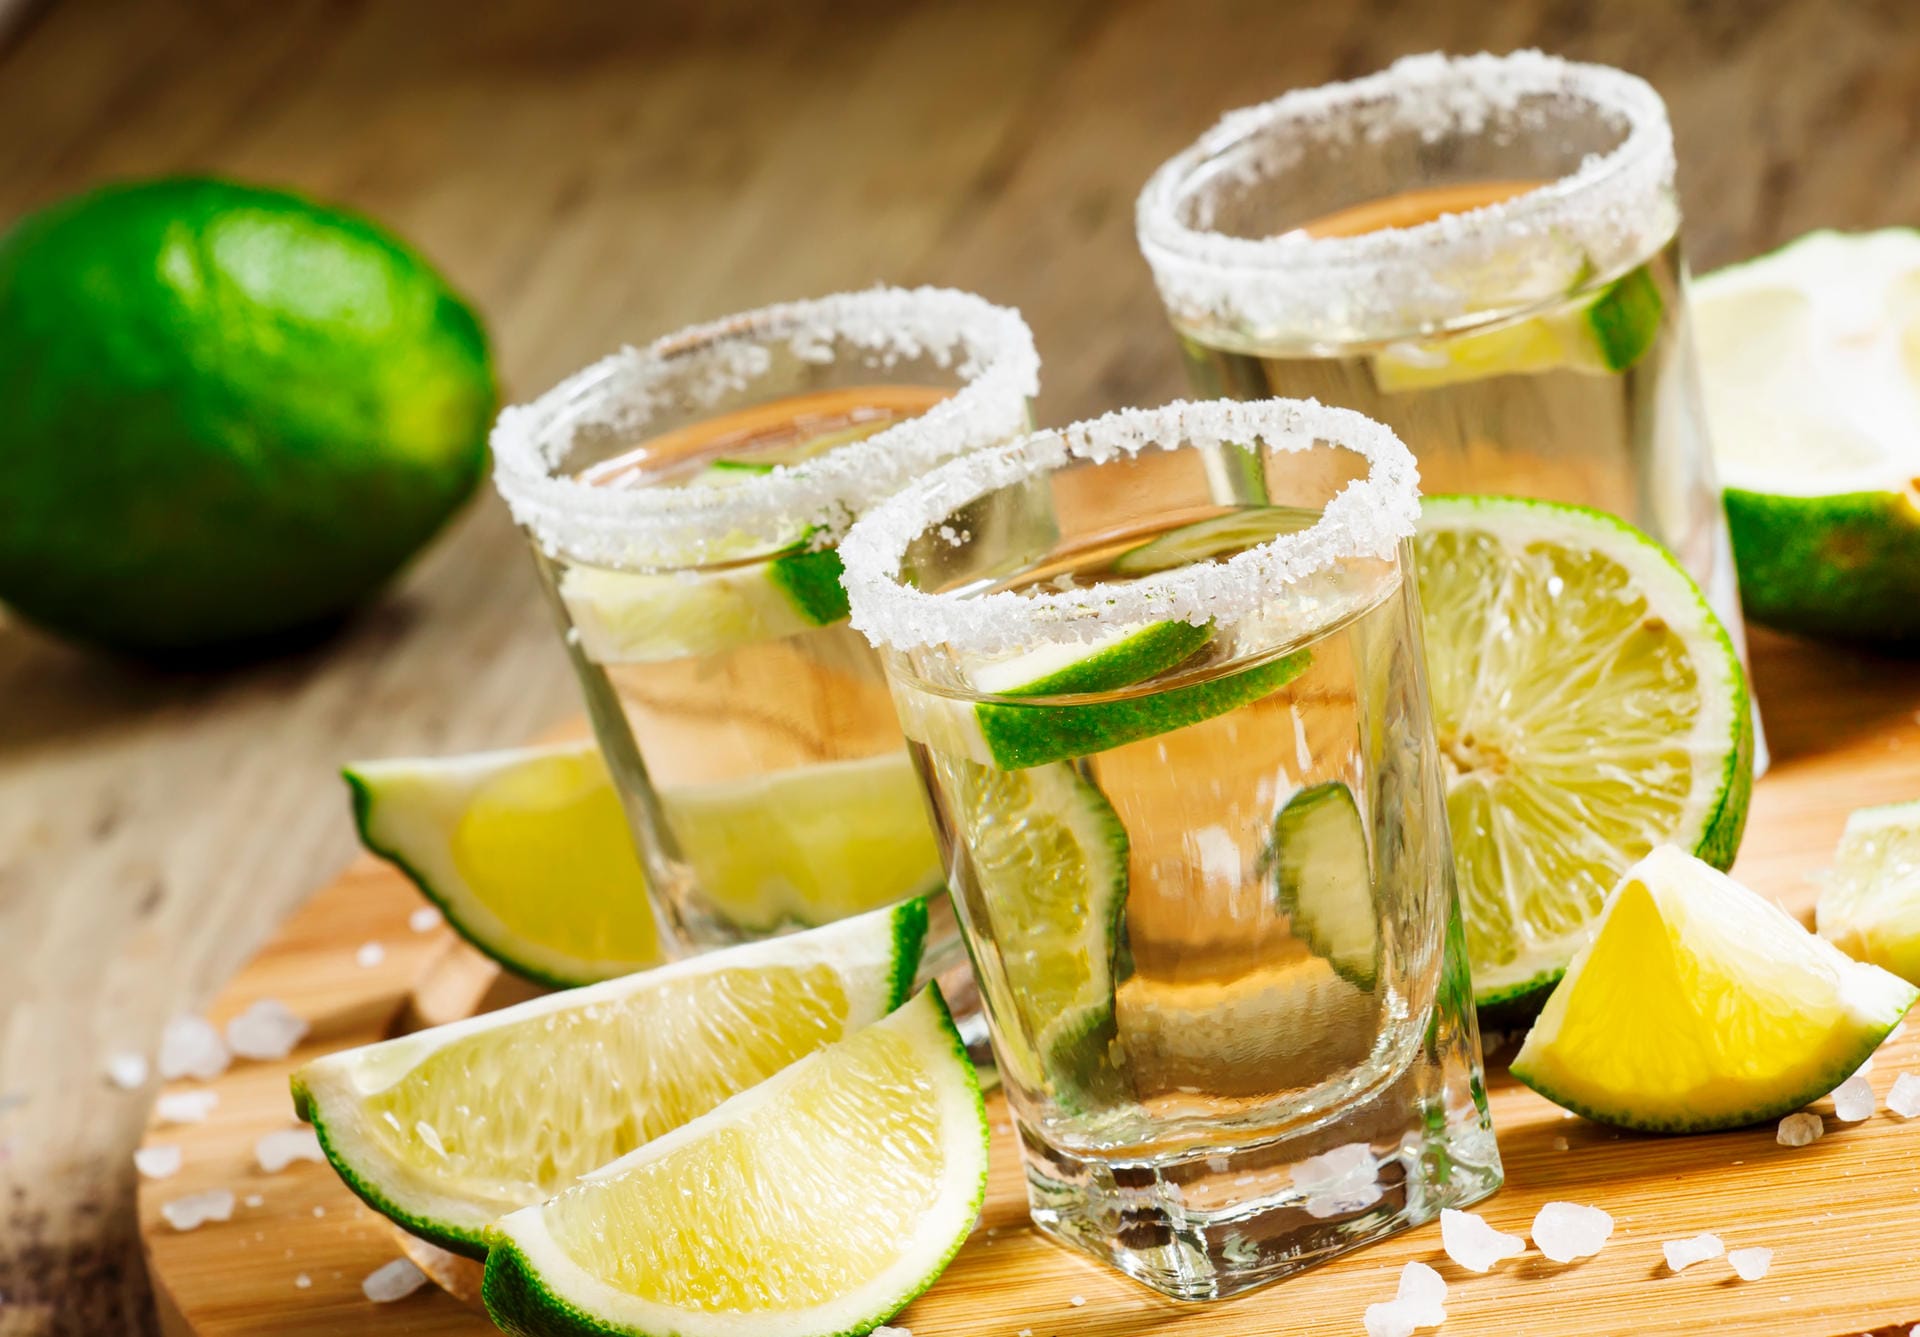 Tradition, die nur für die Billig-Varianten taugt: Tequila wird in vielen Bars mit Salz und Limettenstreifen serviert. Doch beides killt die feinen Aromen eines sehr guten Agavendestillats.